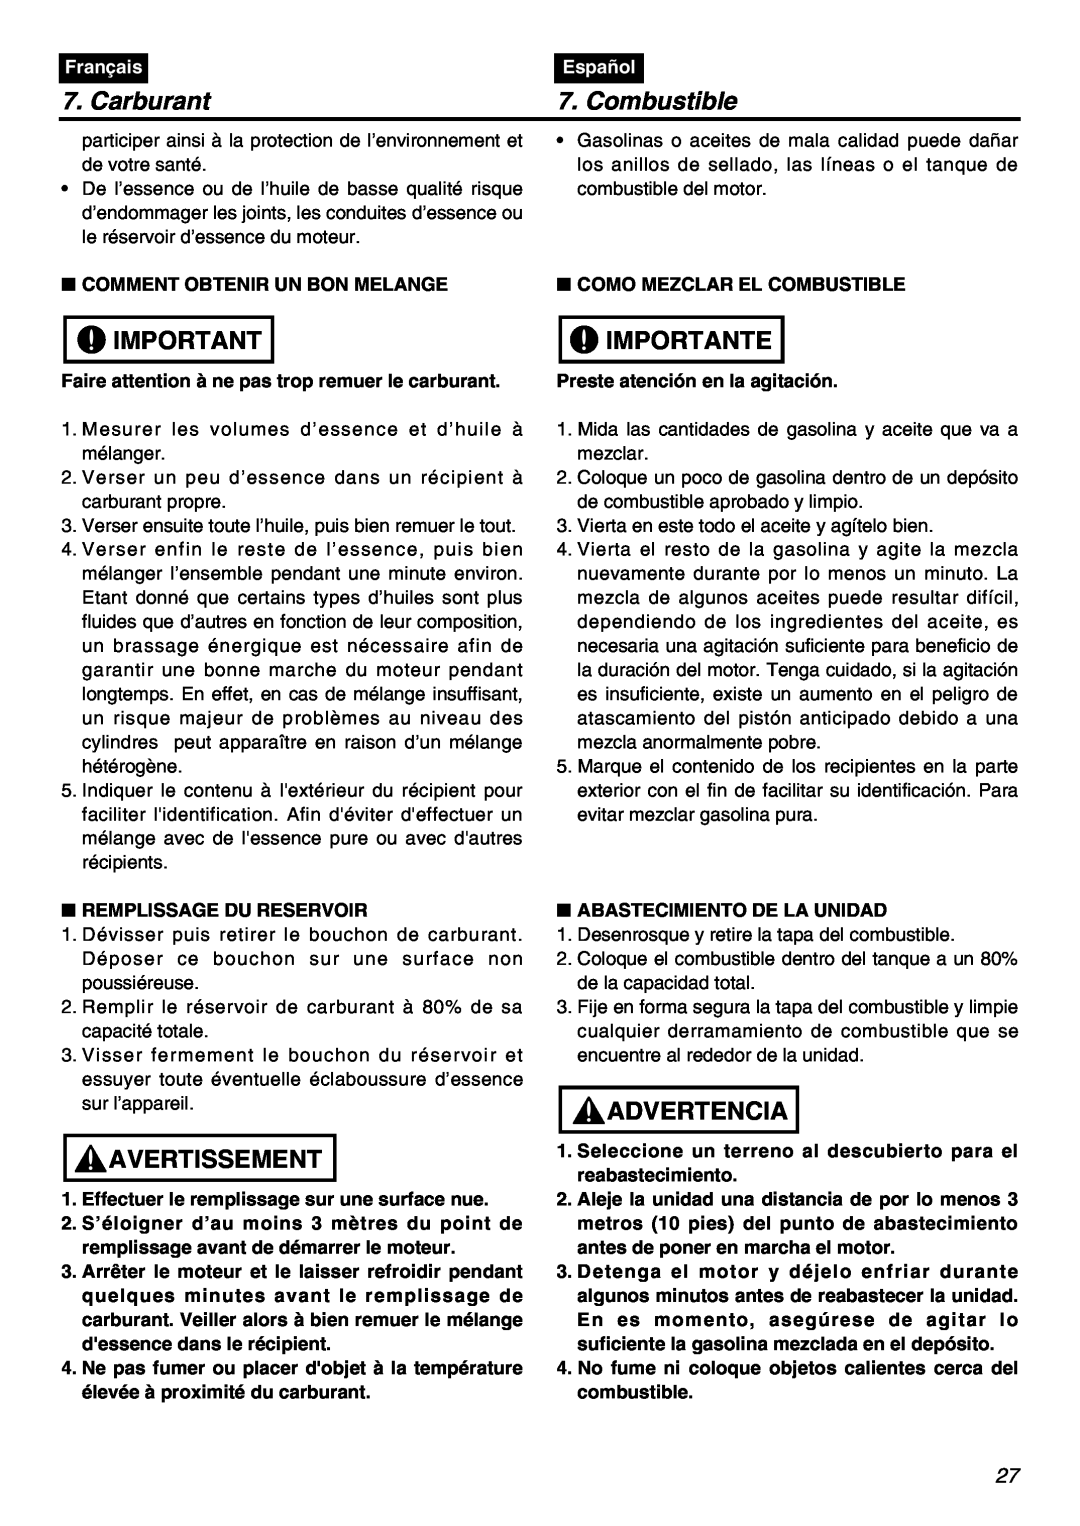 RedMax EBZ7001RH-CA, EBZ7001-CA manual Carburant, Combustible, Importante, Avertissement, Advertencia, Français, Español 